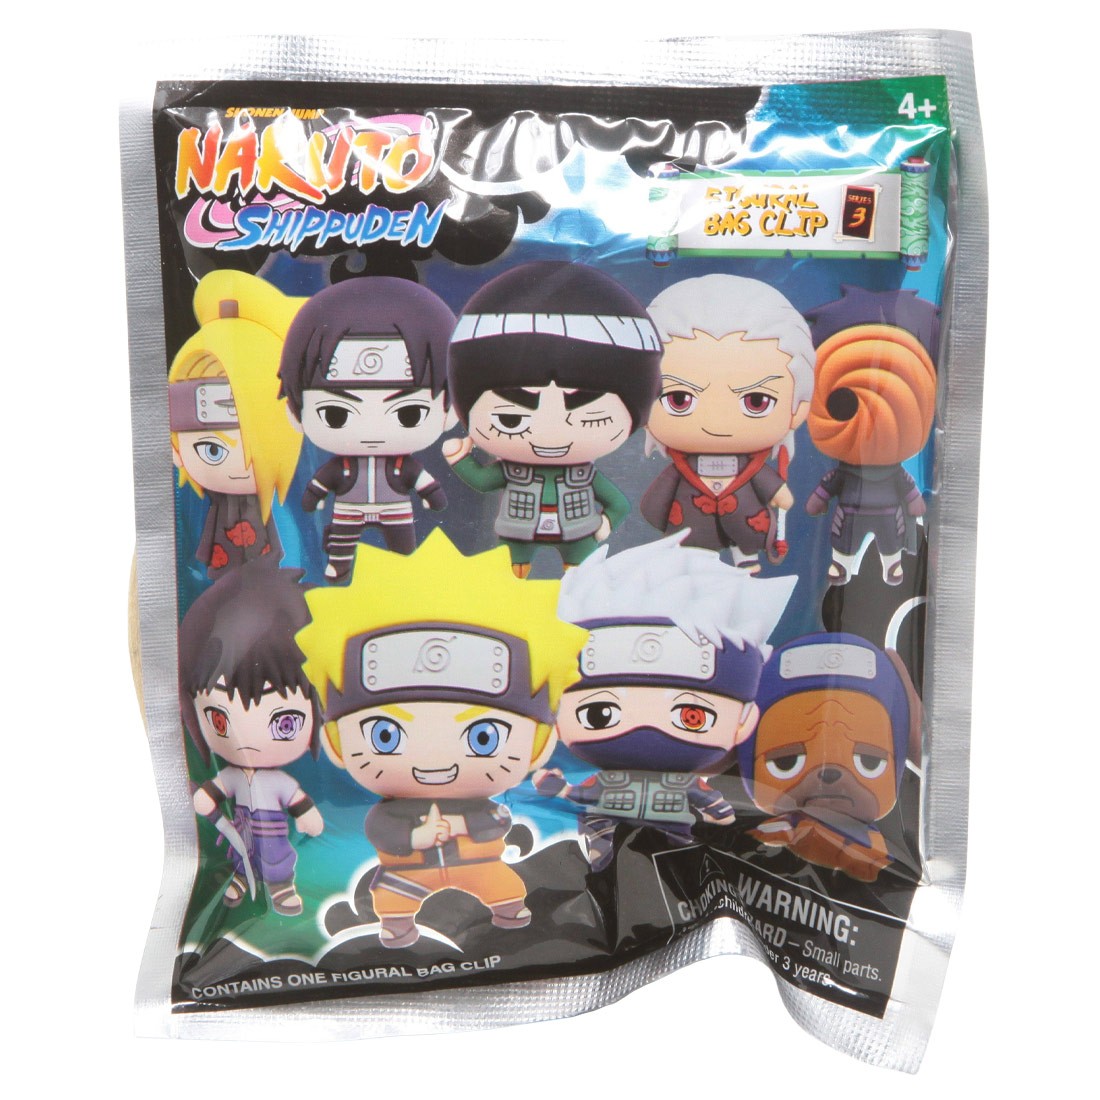 Monogram Naruto Shippuden Series 3 Figural Bag Clip - Naruto 